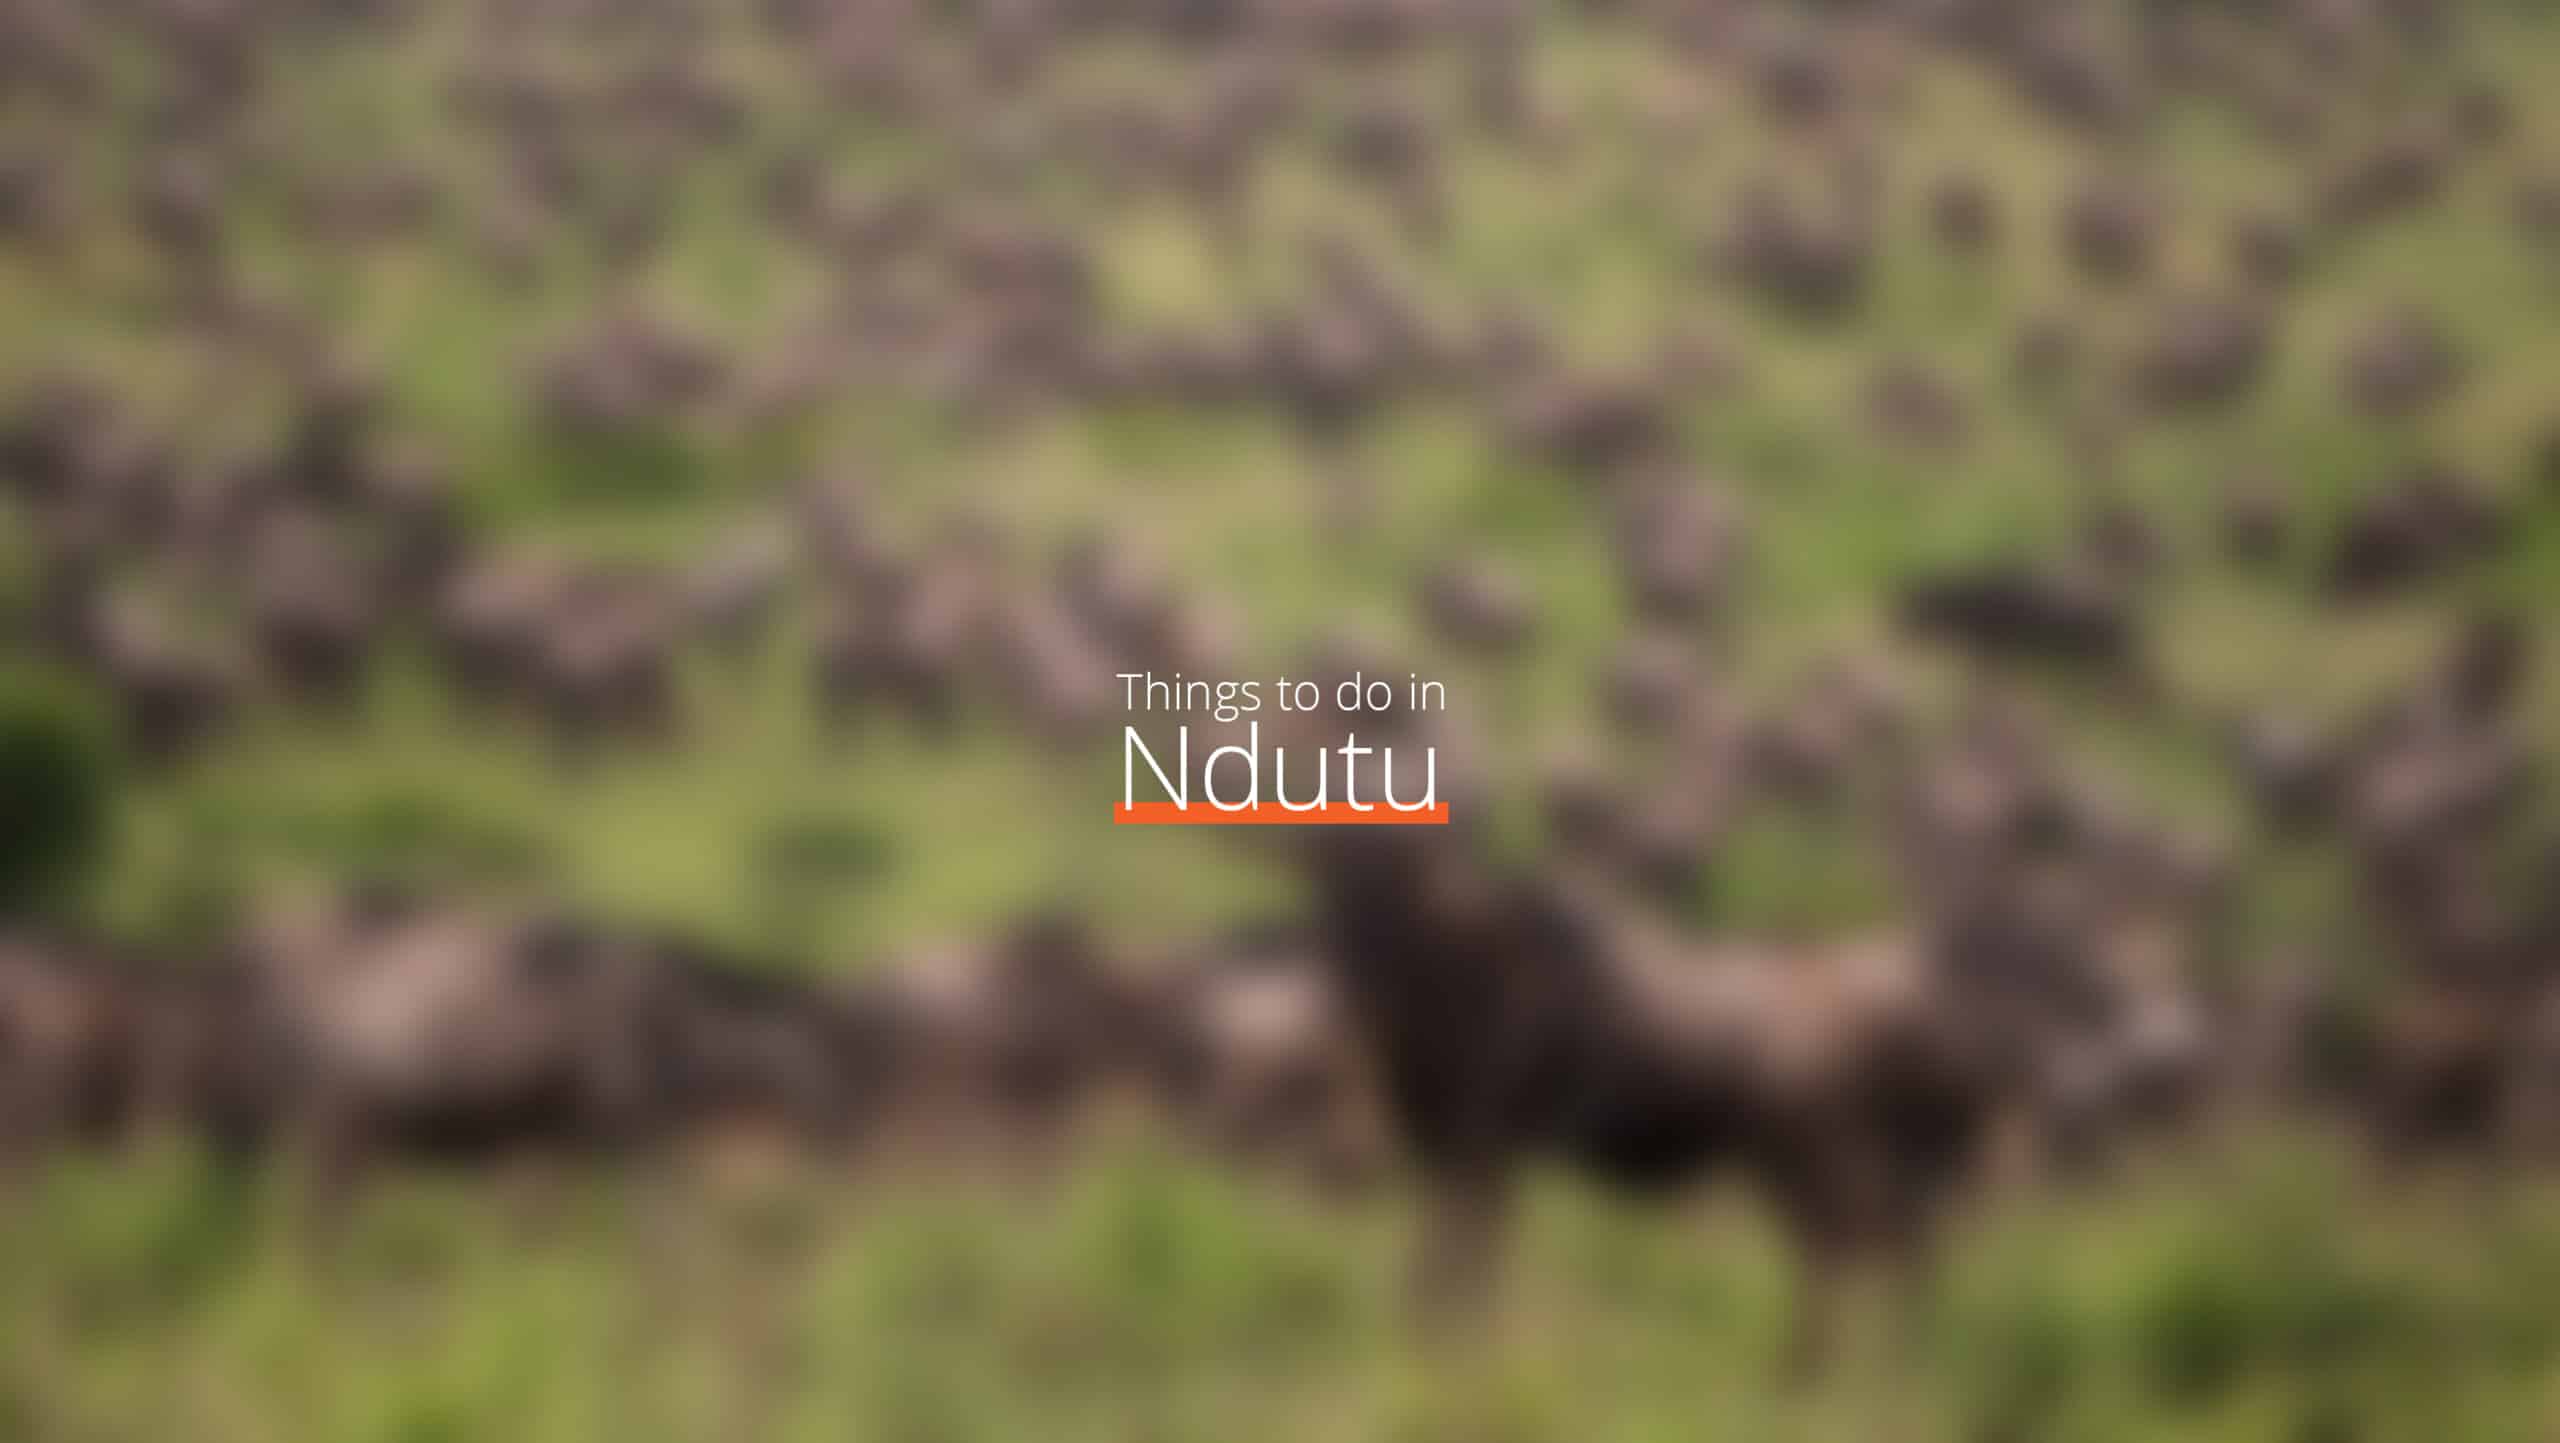 坦桑尼亚 - ndutu scaled - 什么时候去坦桑尼亚